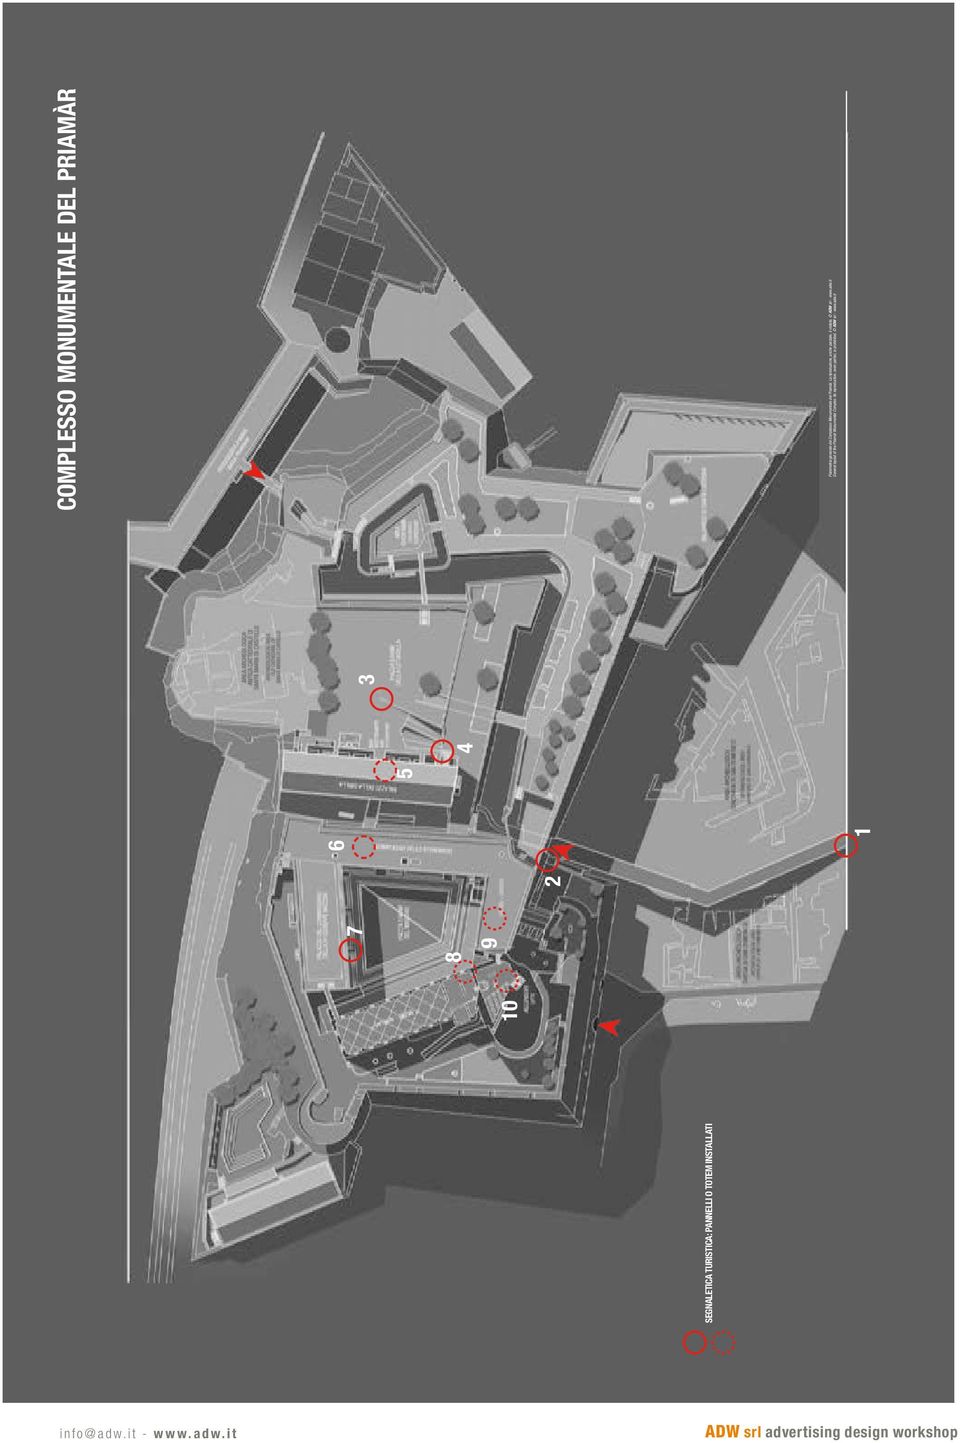 Planimetria generale del Complesso Monumentale del Priamàr. La riproduzione, anche parziale, è vietata. ADW srl - www.